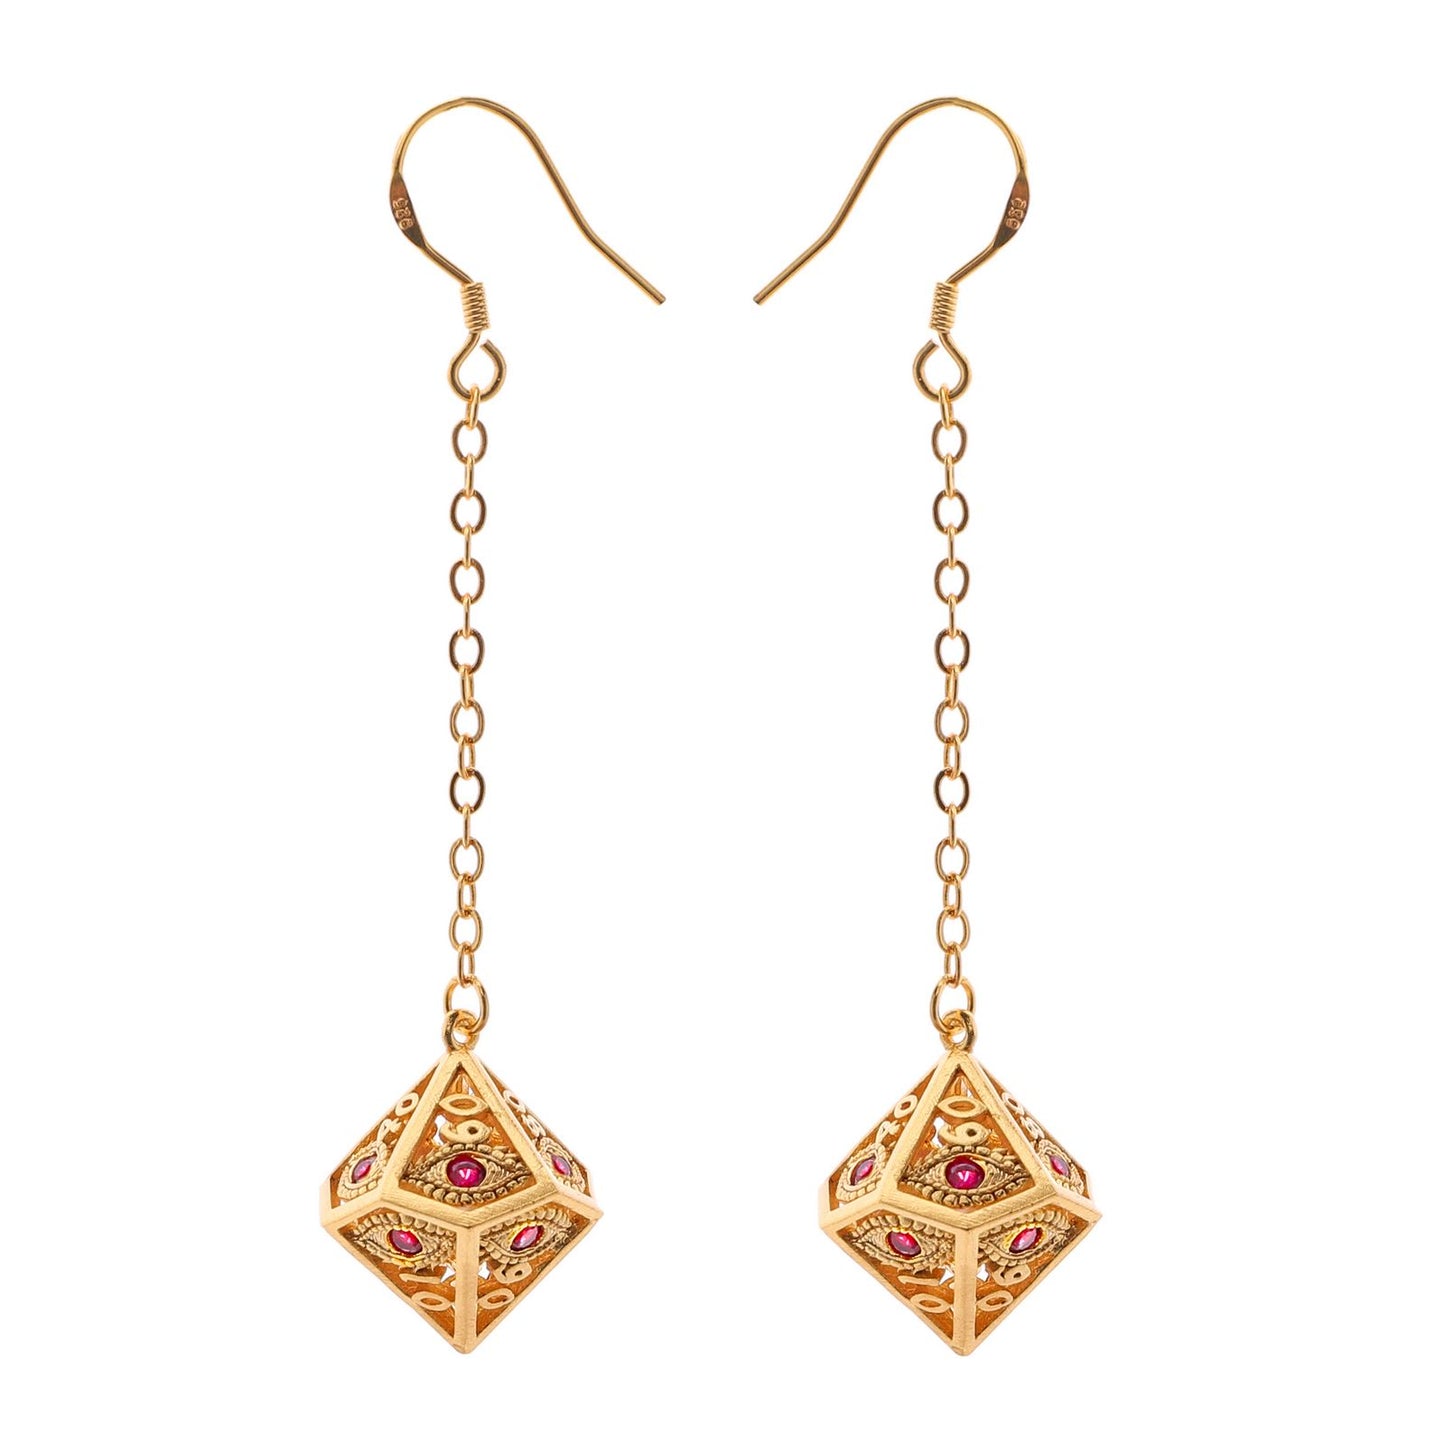 Dragon's eye D100 earrings-Gold w/Red gems